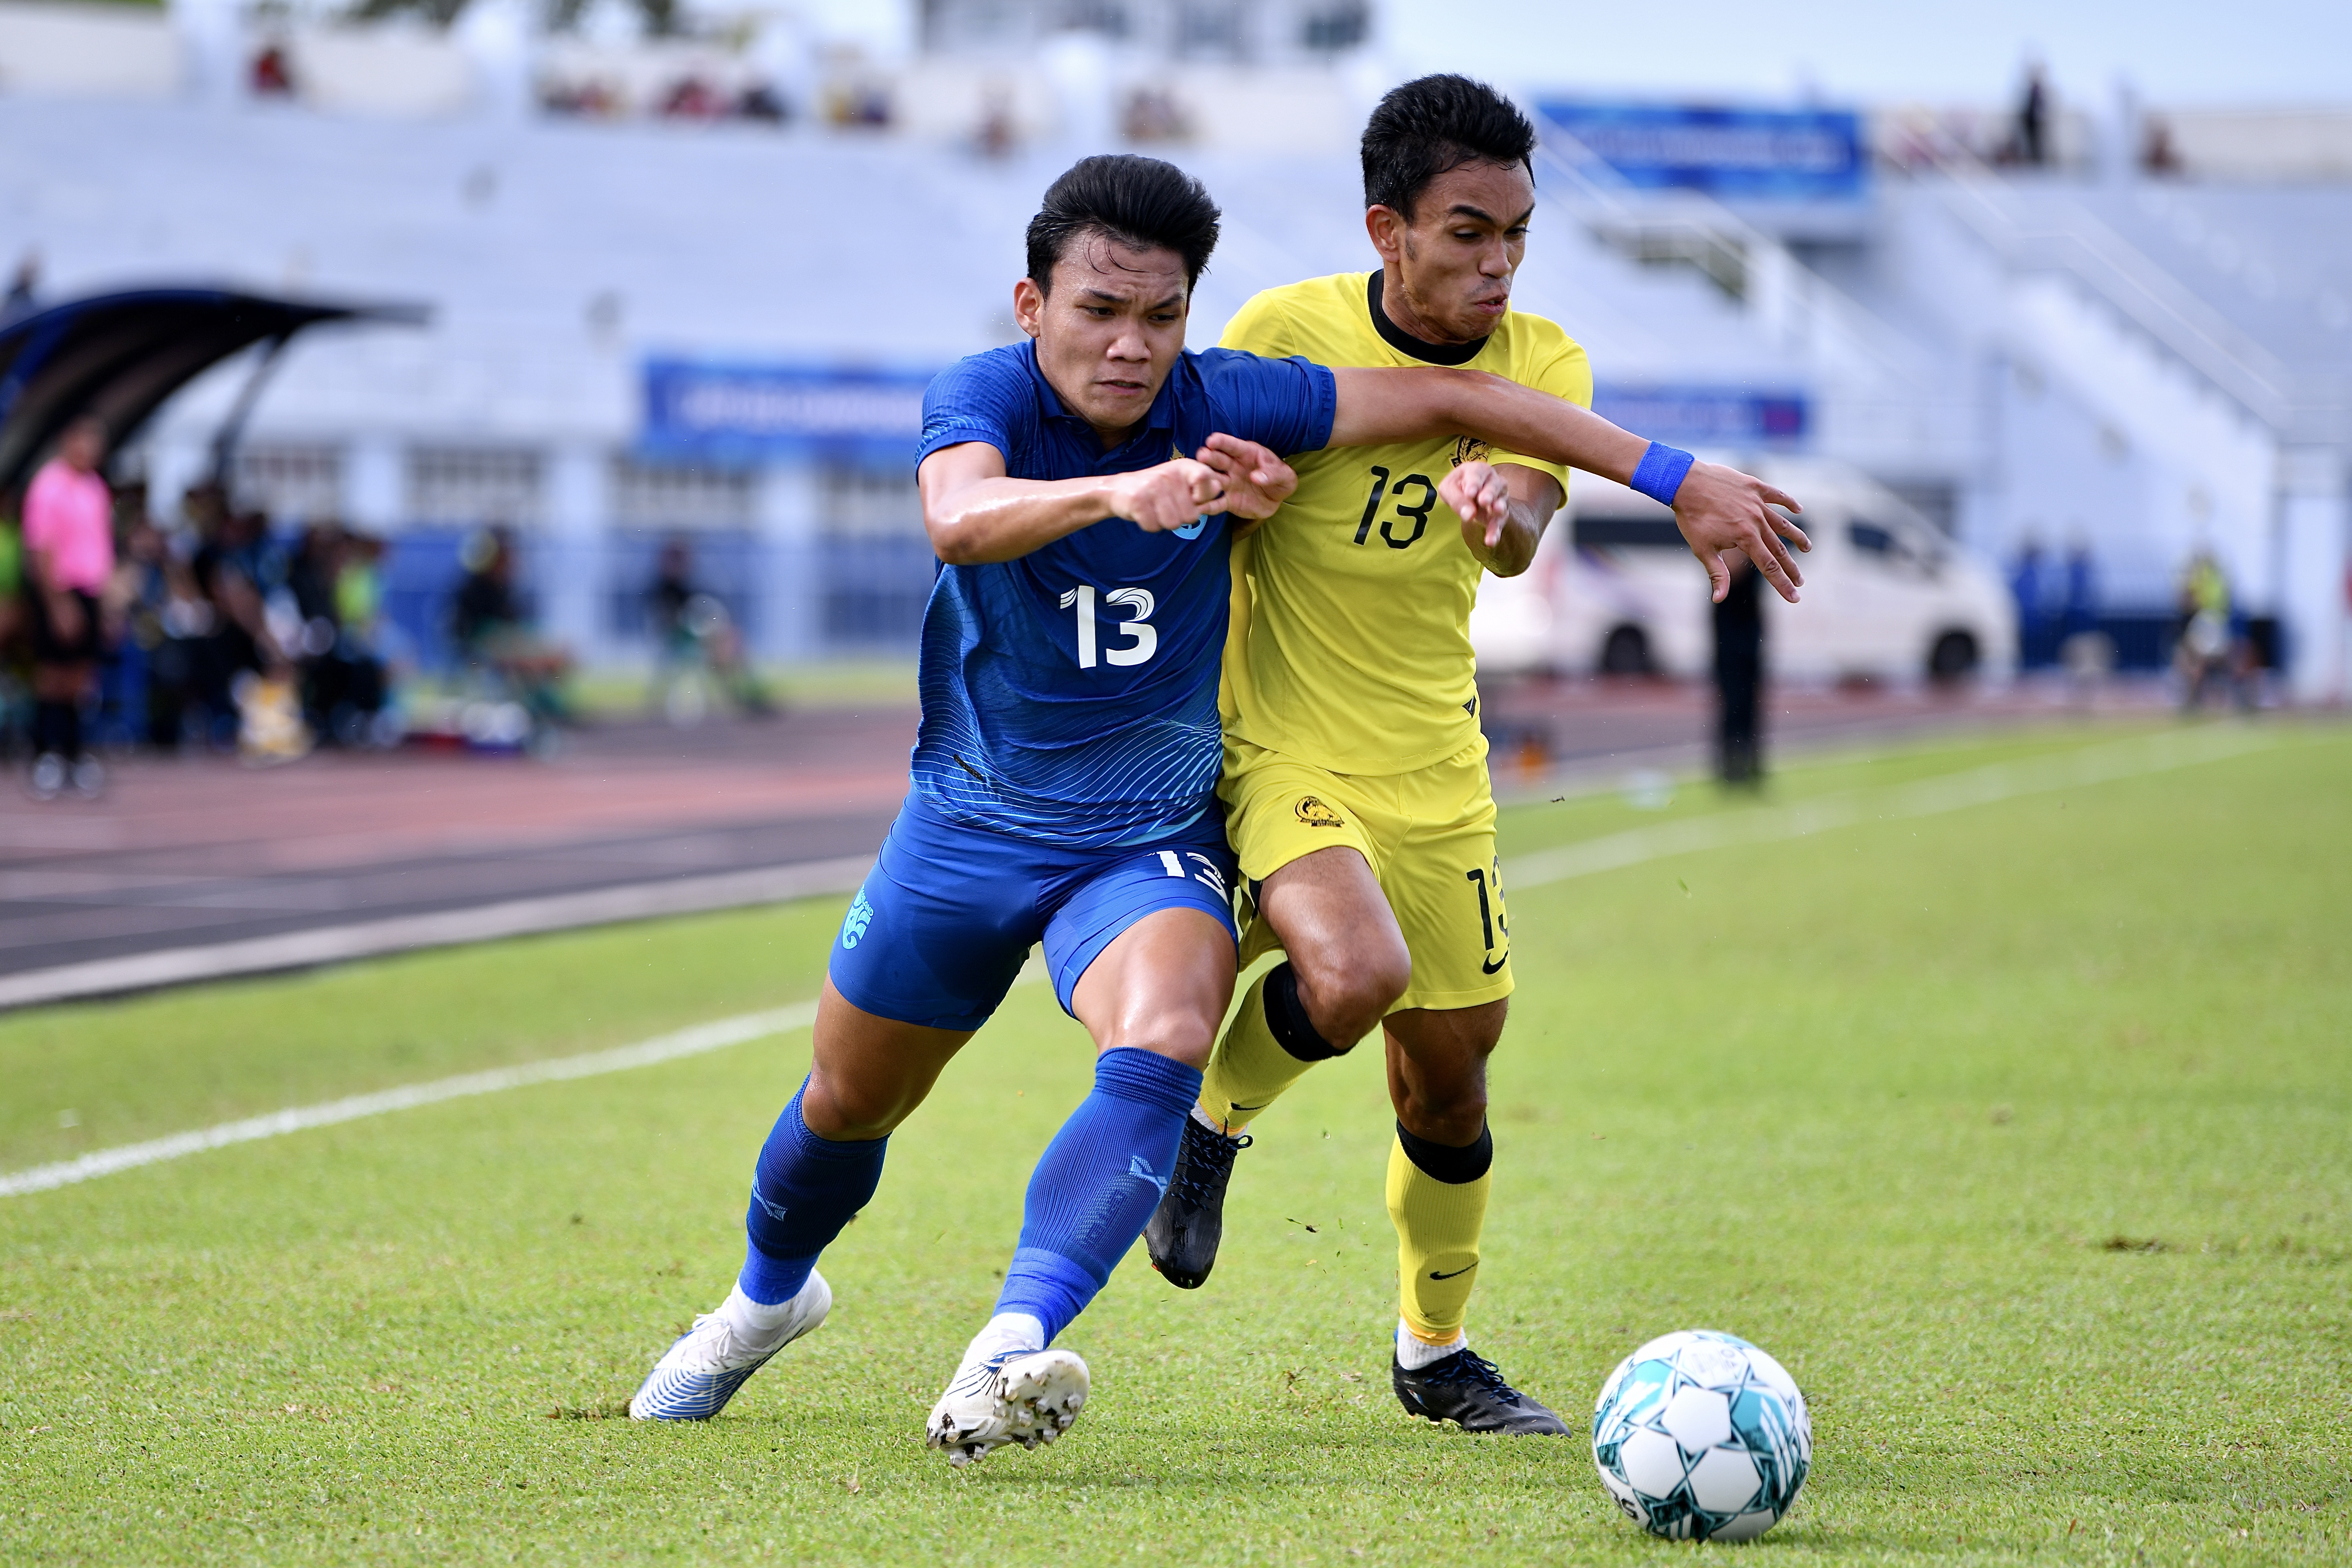 ทีมชาติไทย ชนะจุดโทษ มาเลเซีย 4-3 คว้าอันดับ 3 AFF U23